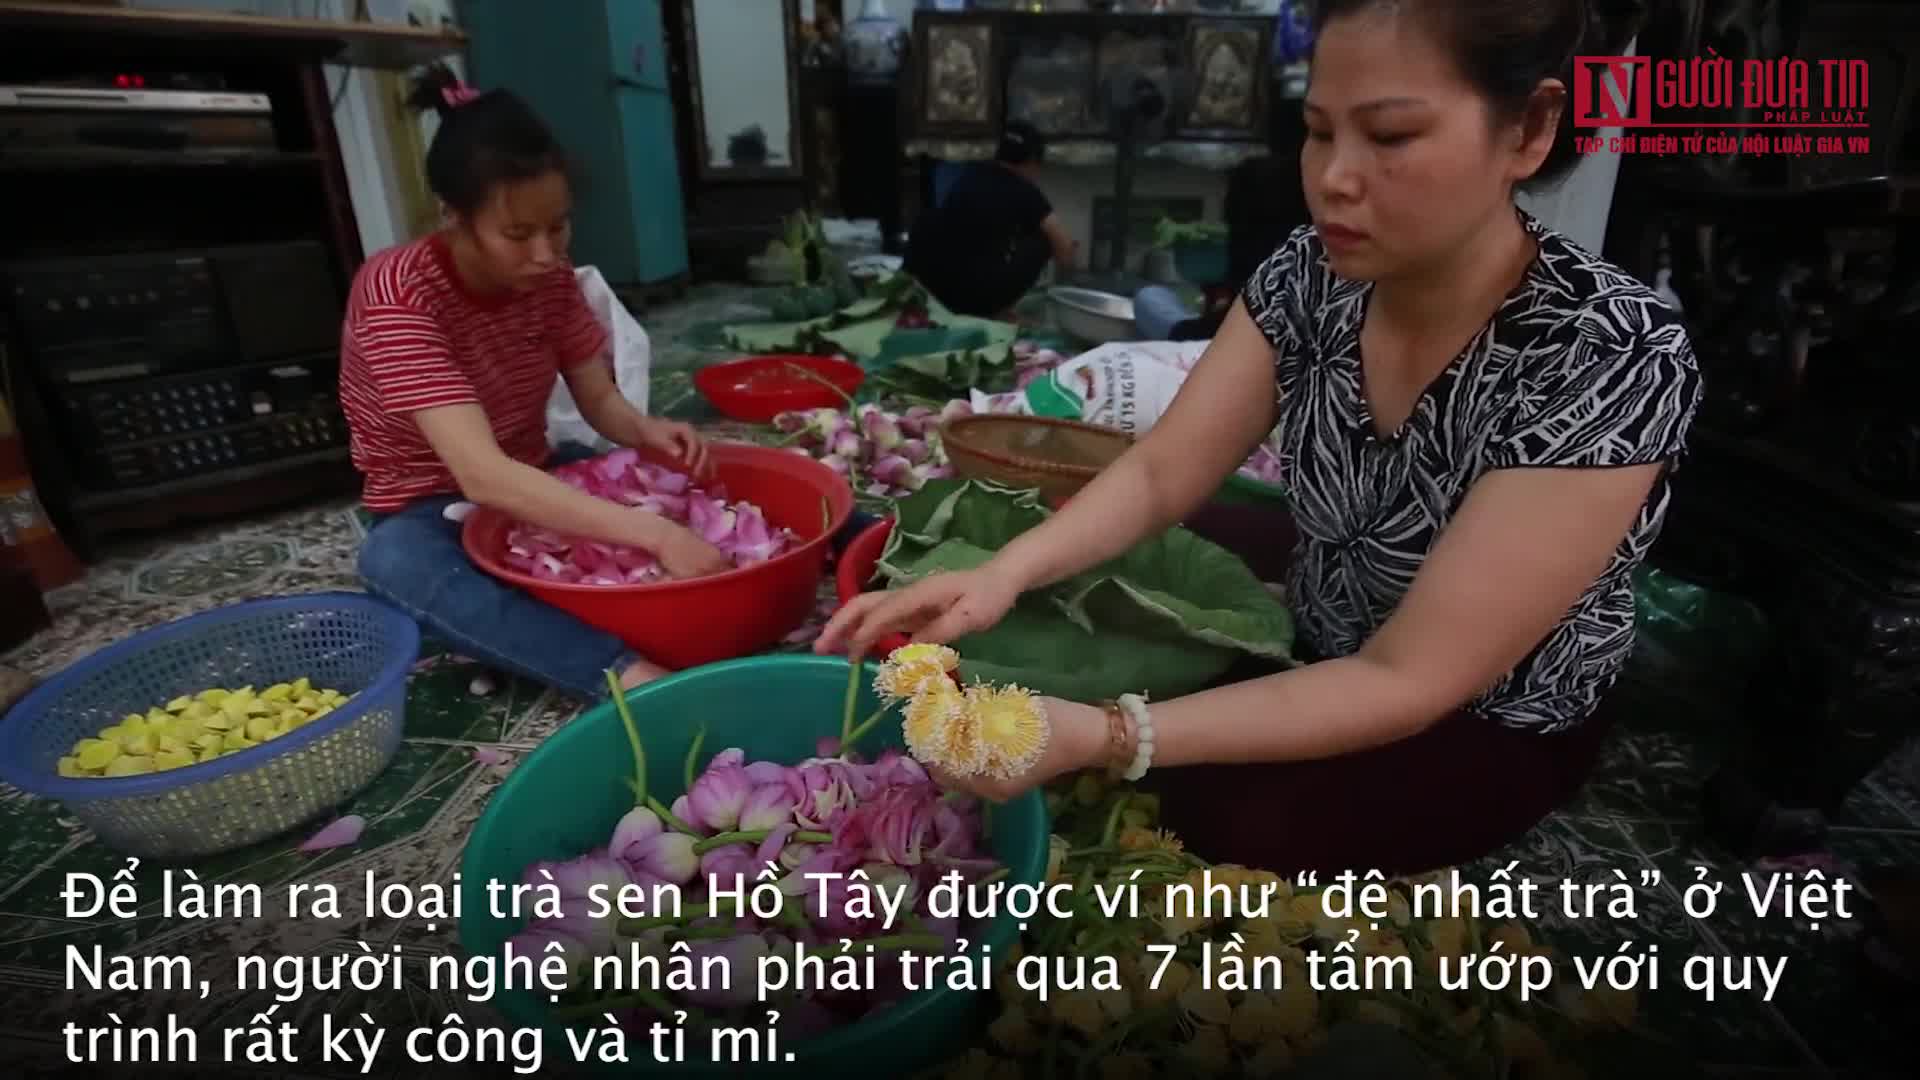 Quá trình làm ra đệ nhất trà ở Việt Nam